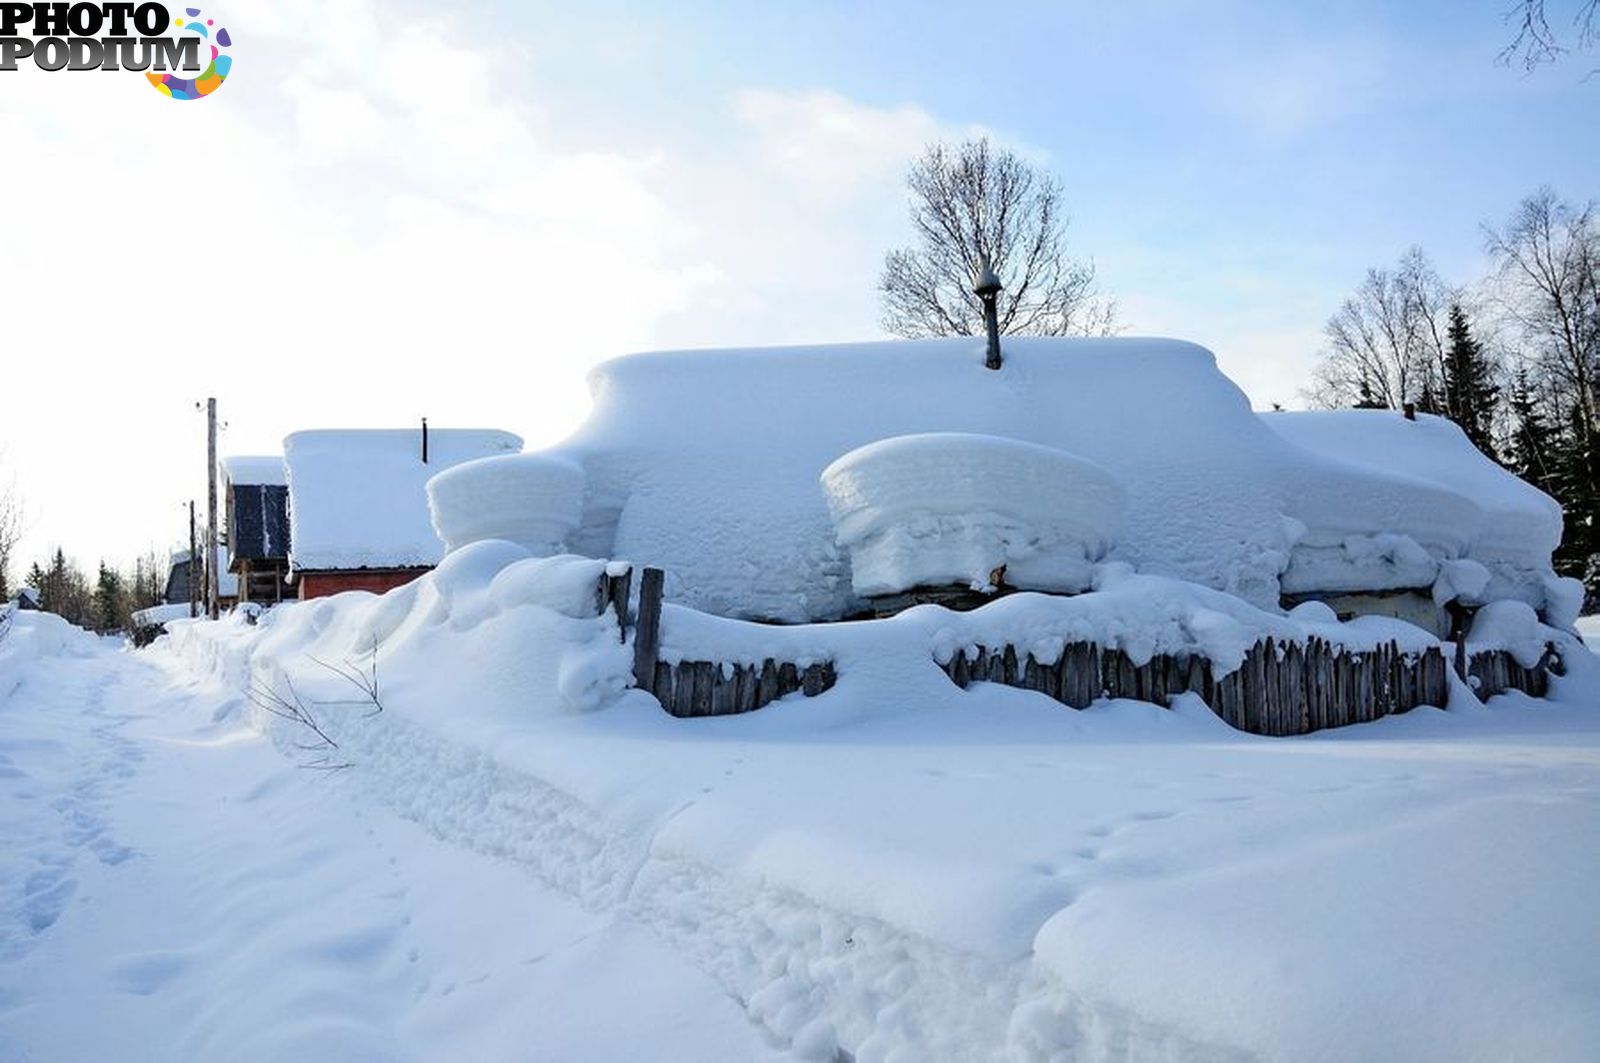 Село занесенное снегом оттаивает по немногу. Много снега. Сугробы в деревне. Дом занесло снегом. Зима много снега.